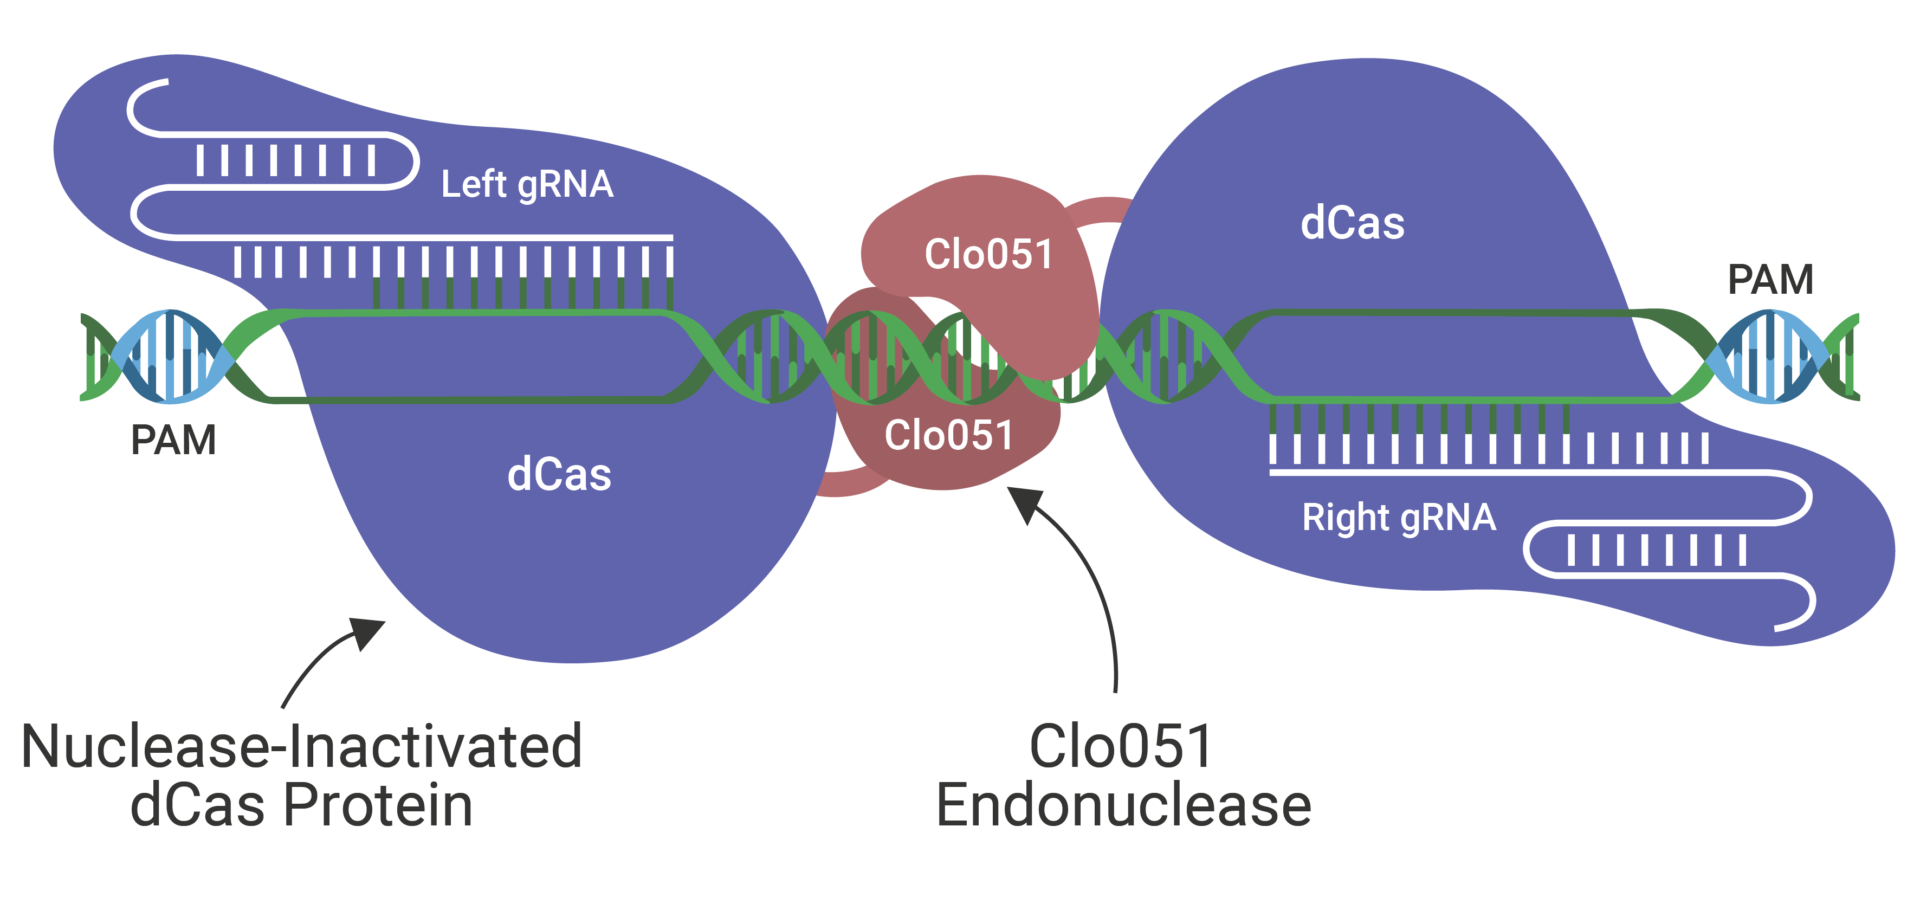 Cas-CLOVER gene editing technology